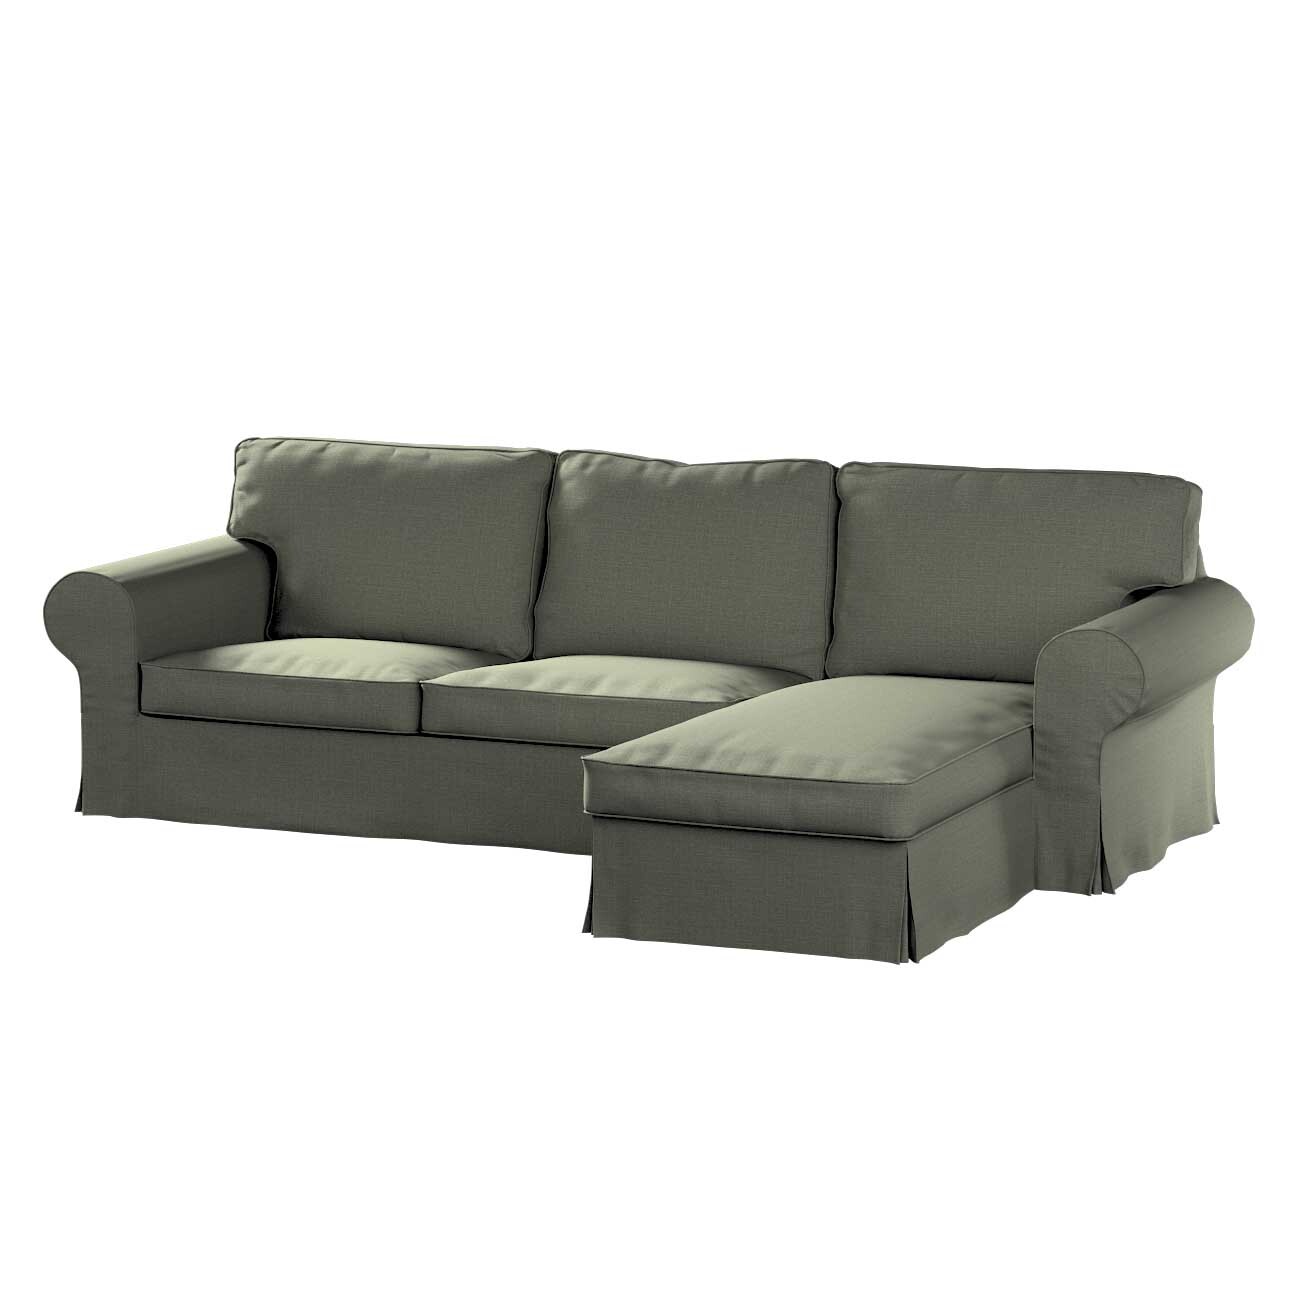 Bezug für Ektorp 2-Sitzer Sofa mit Recamiere, khaki, Ektorp 2-Sitzer Sofabe günstig online kaufen